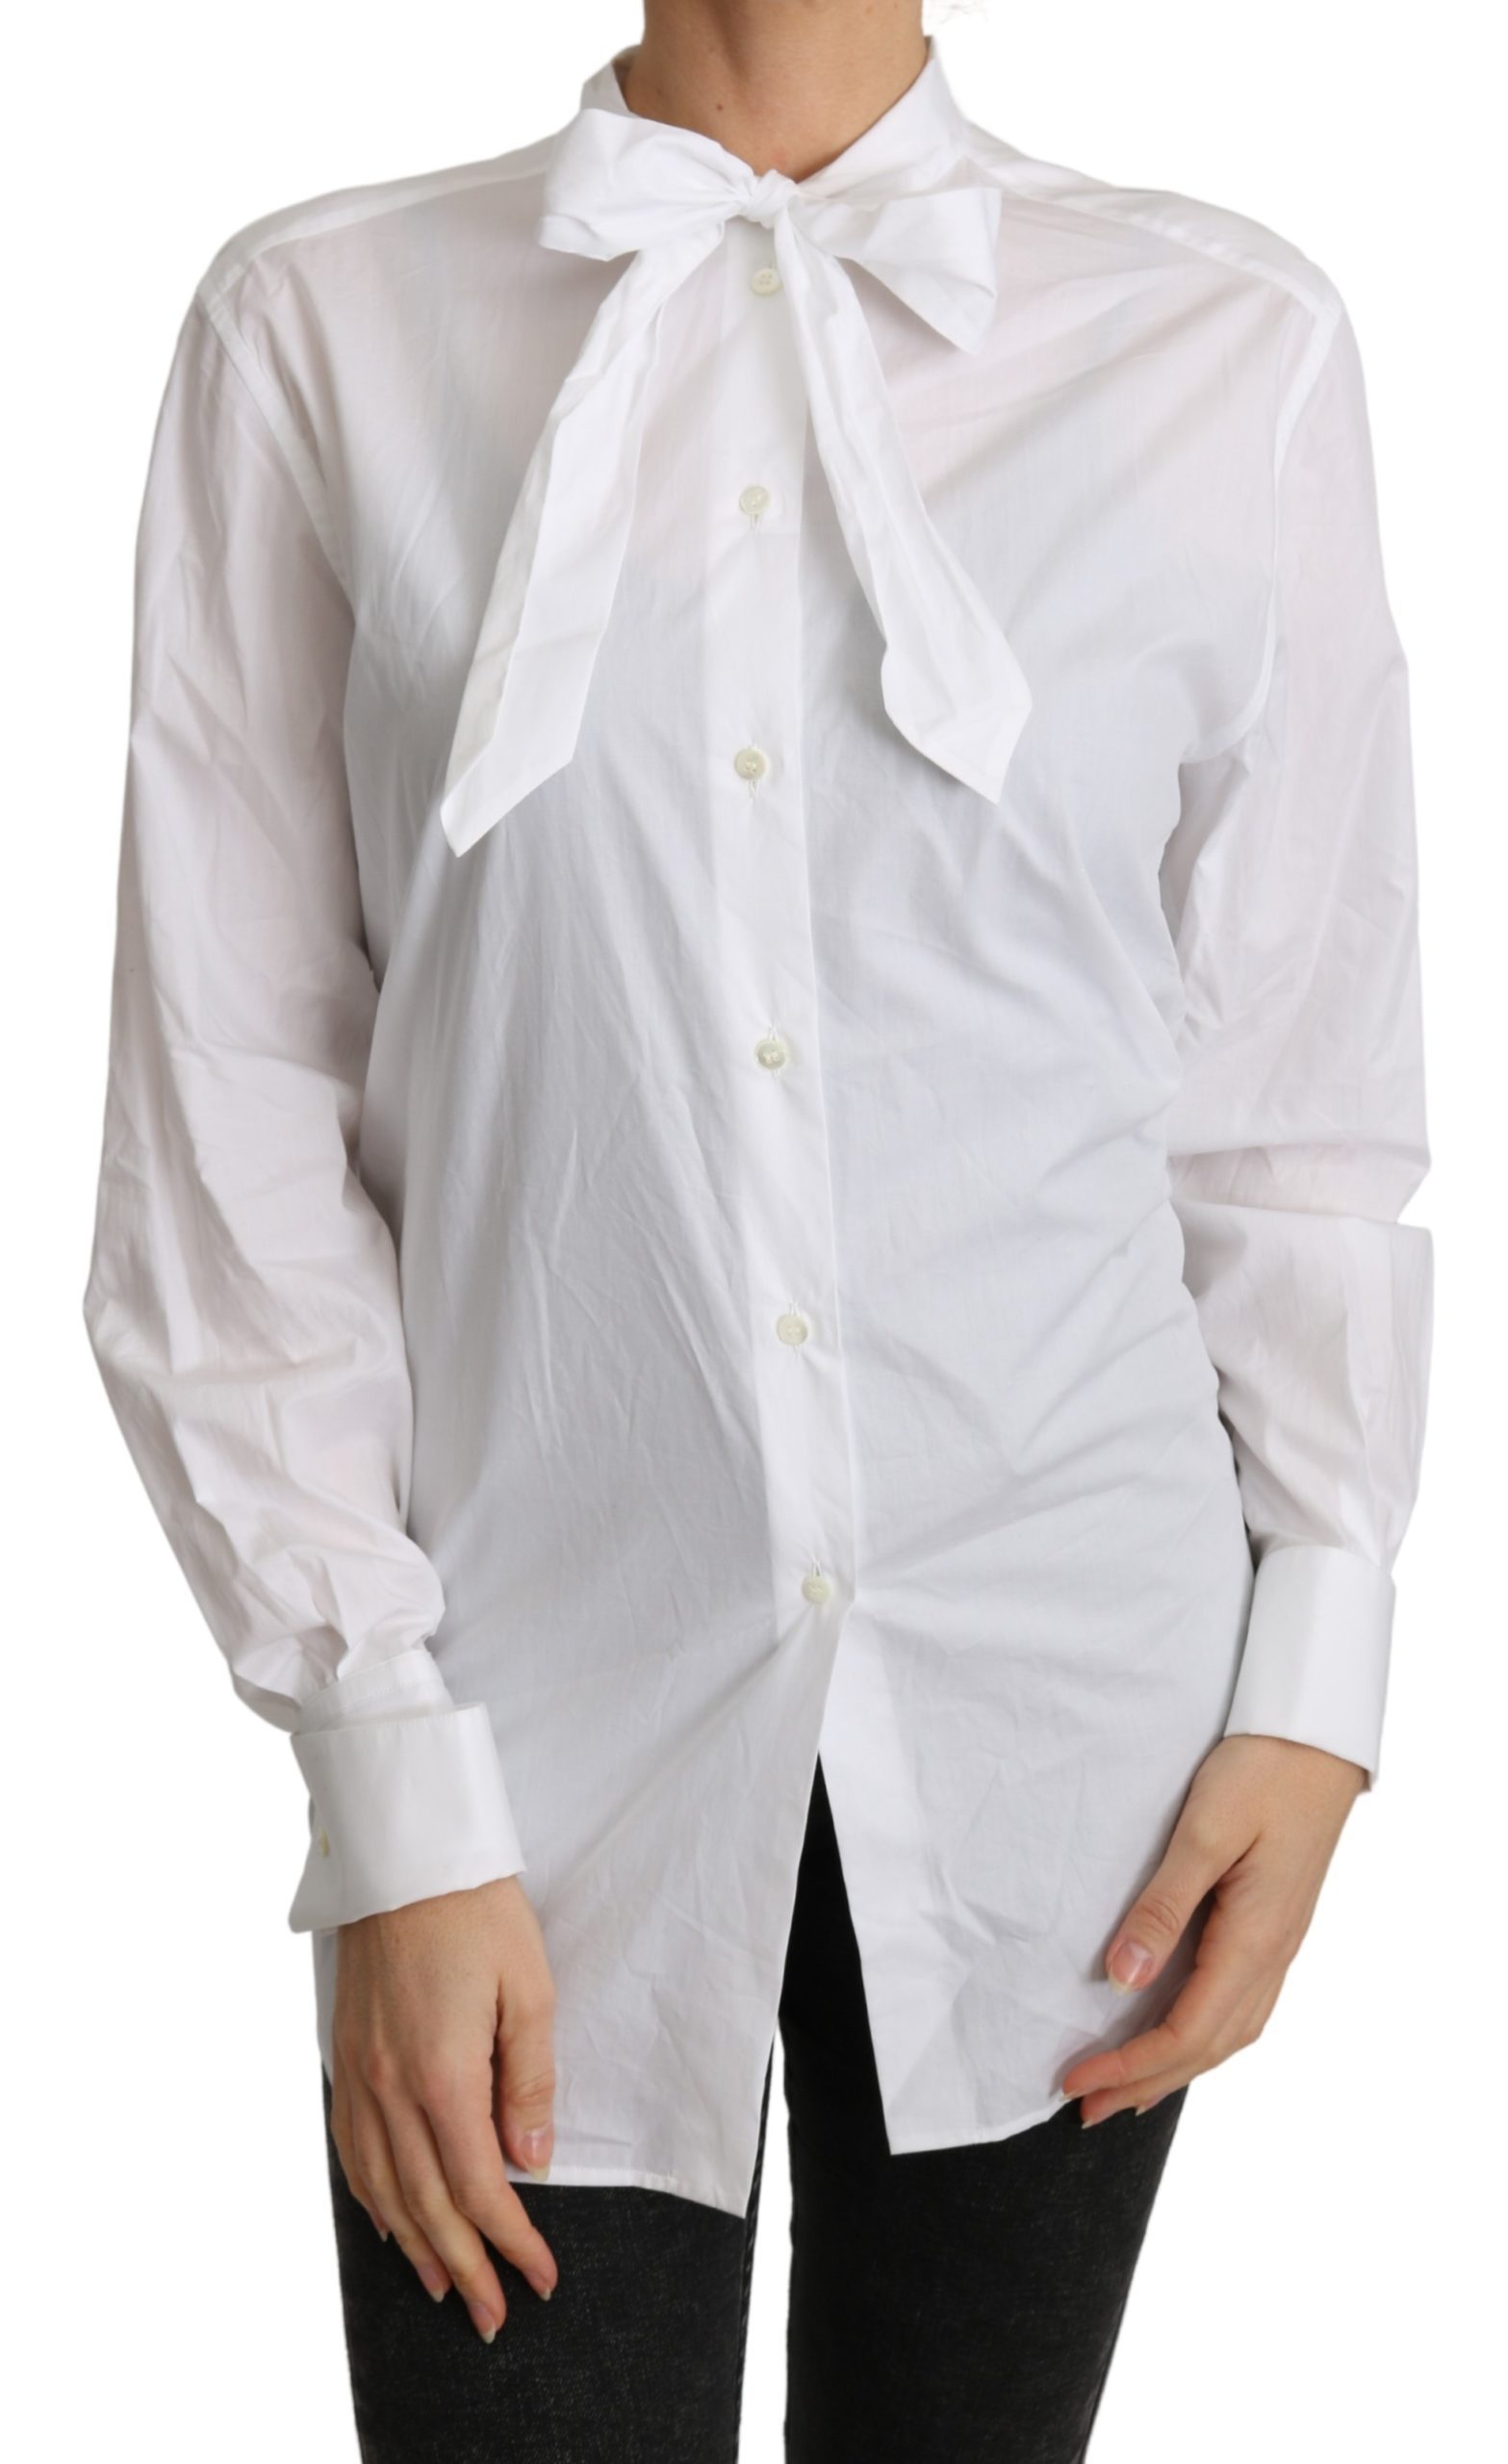 Dolce & Gabbana Women's Scarf Neck Shirts White TSH4830 - IT44|L